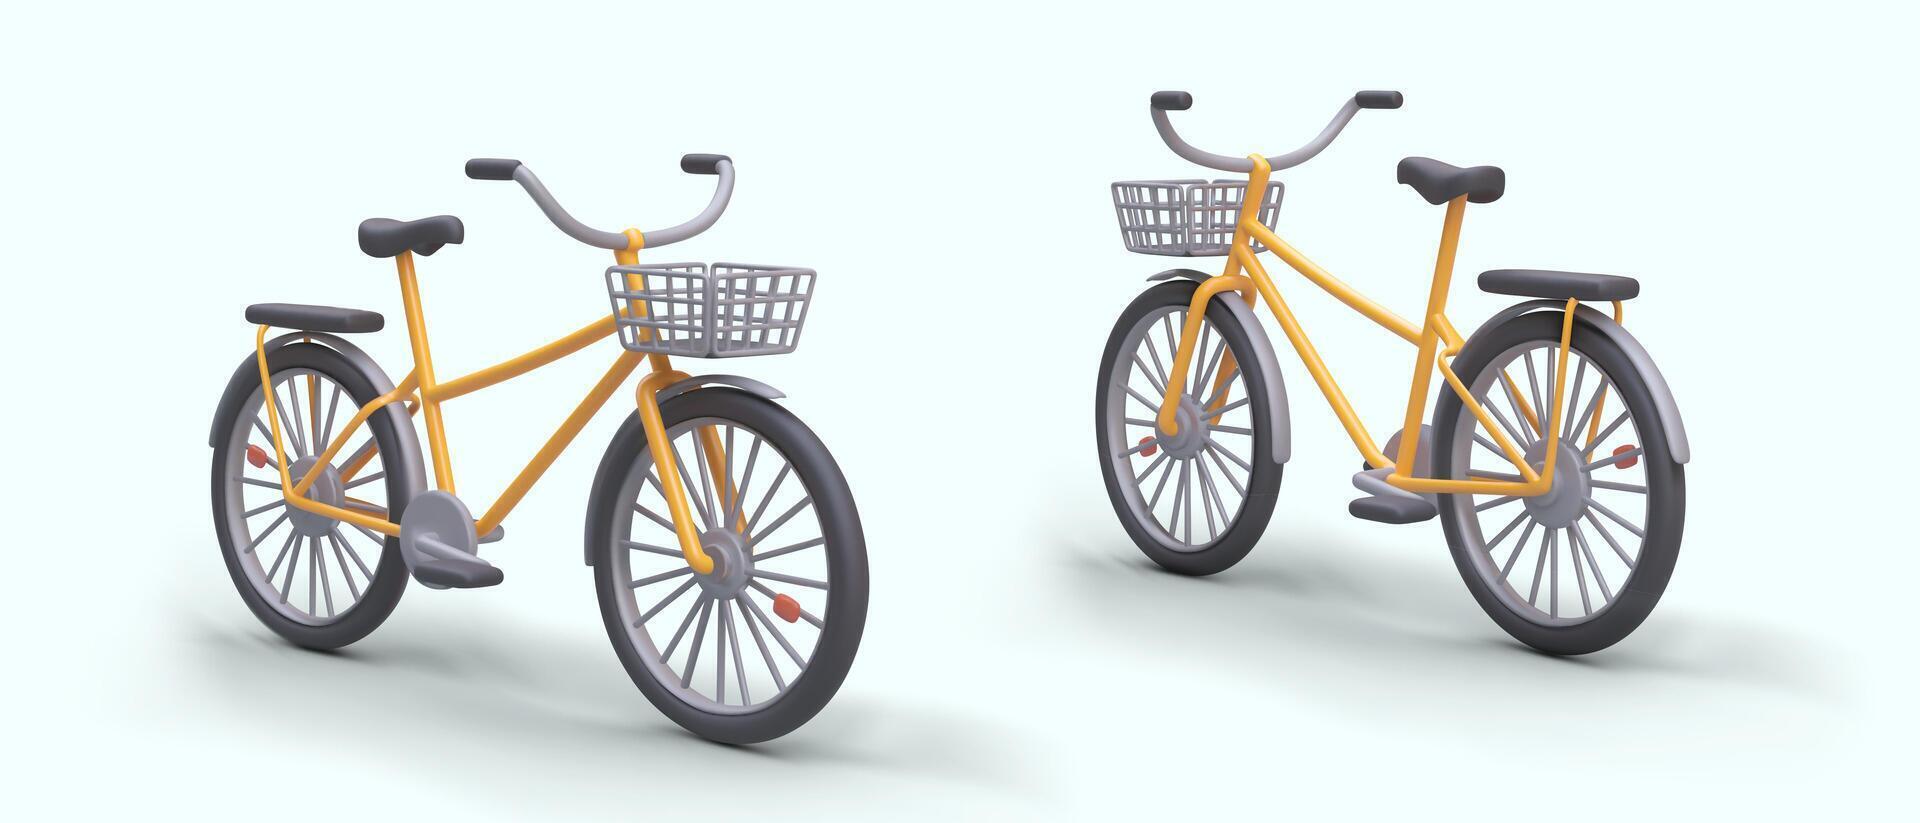 città Bici con shopping cesti. 3d Immagine di moderno personale veicolo vettore